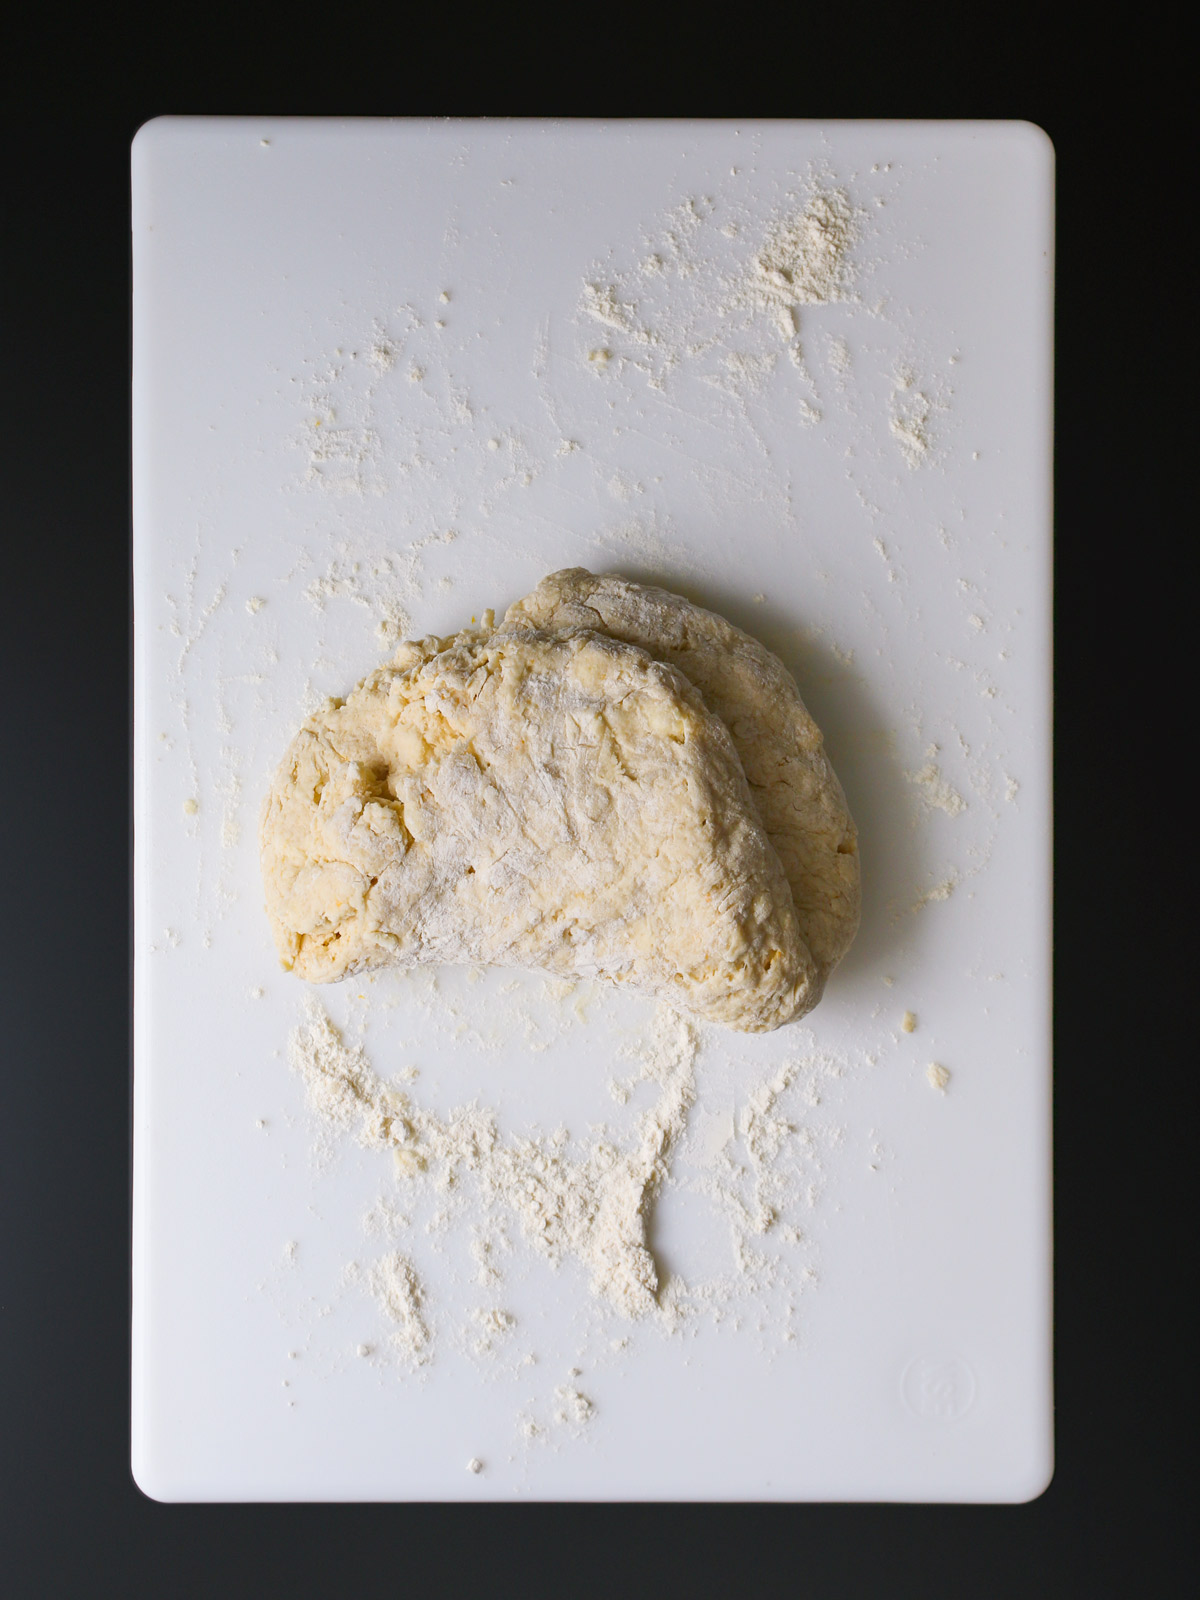 kneading dough on a floured surface.